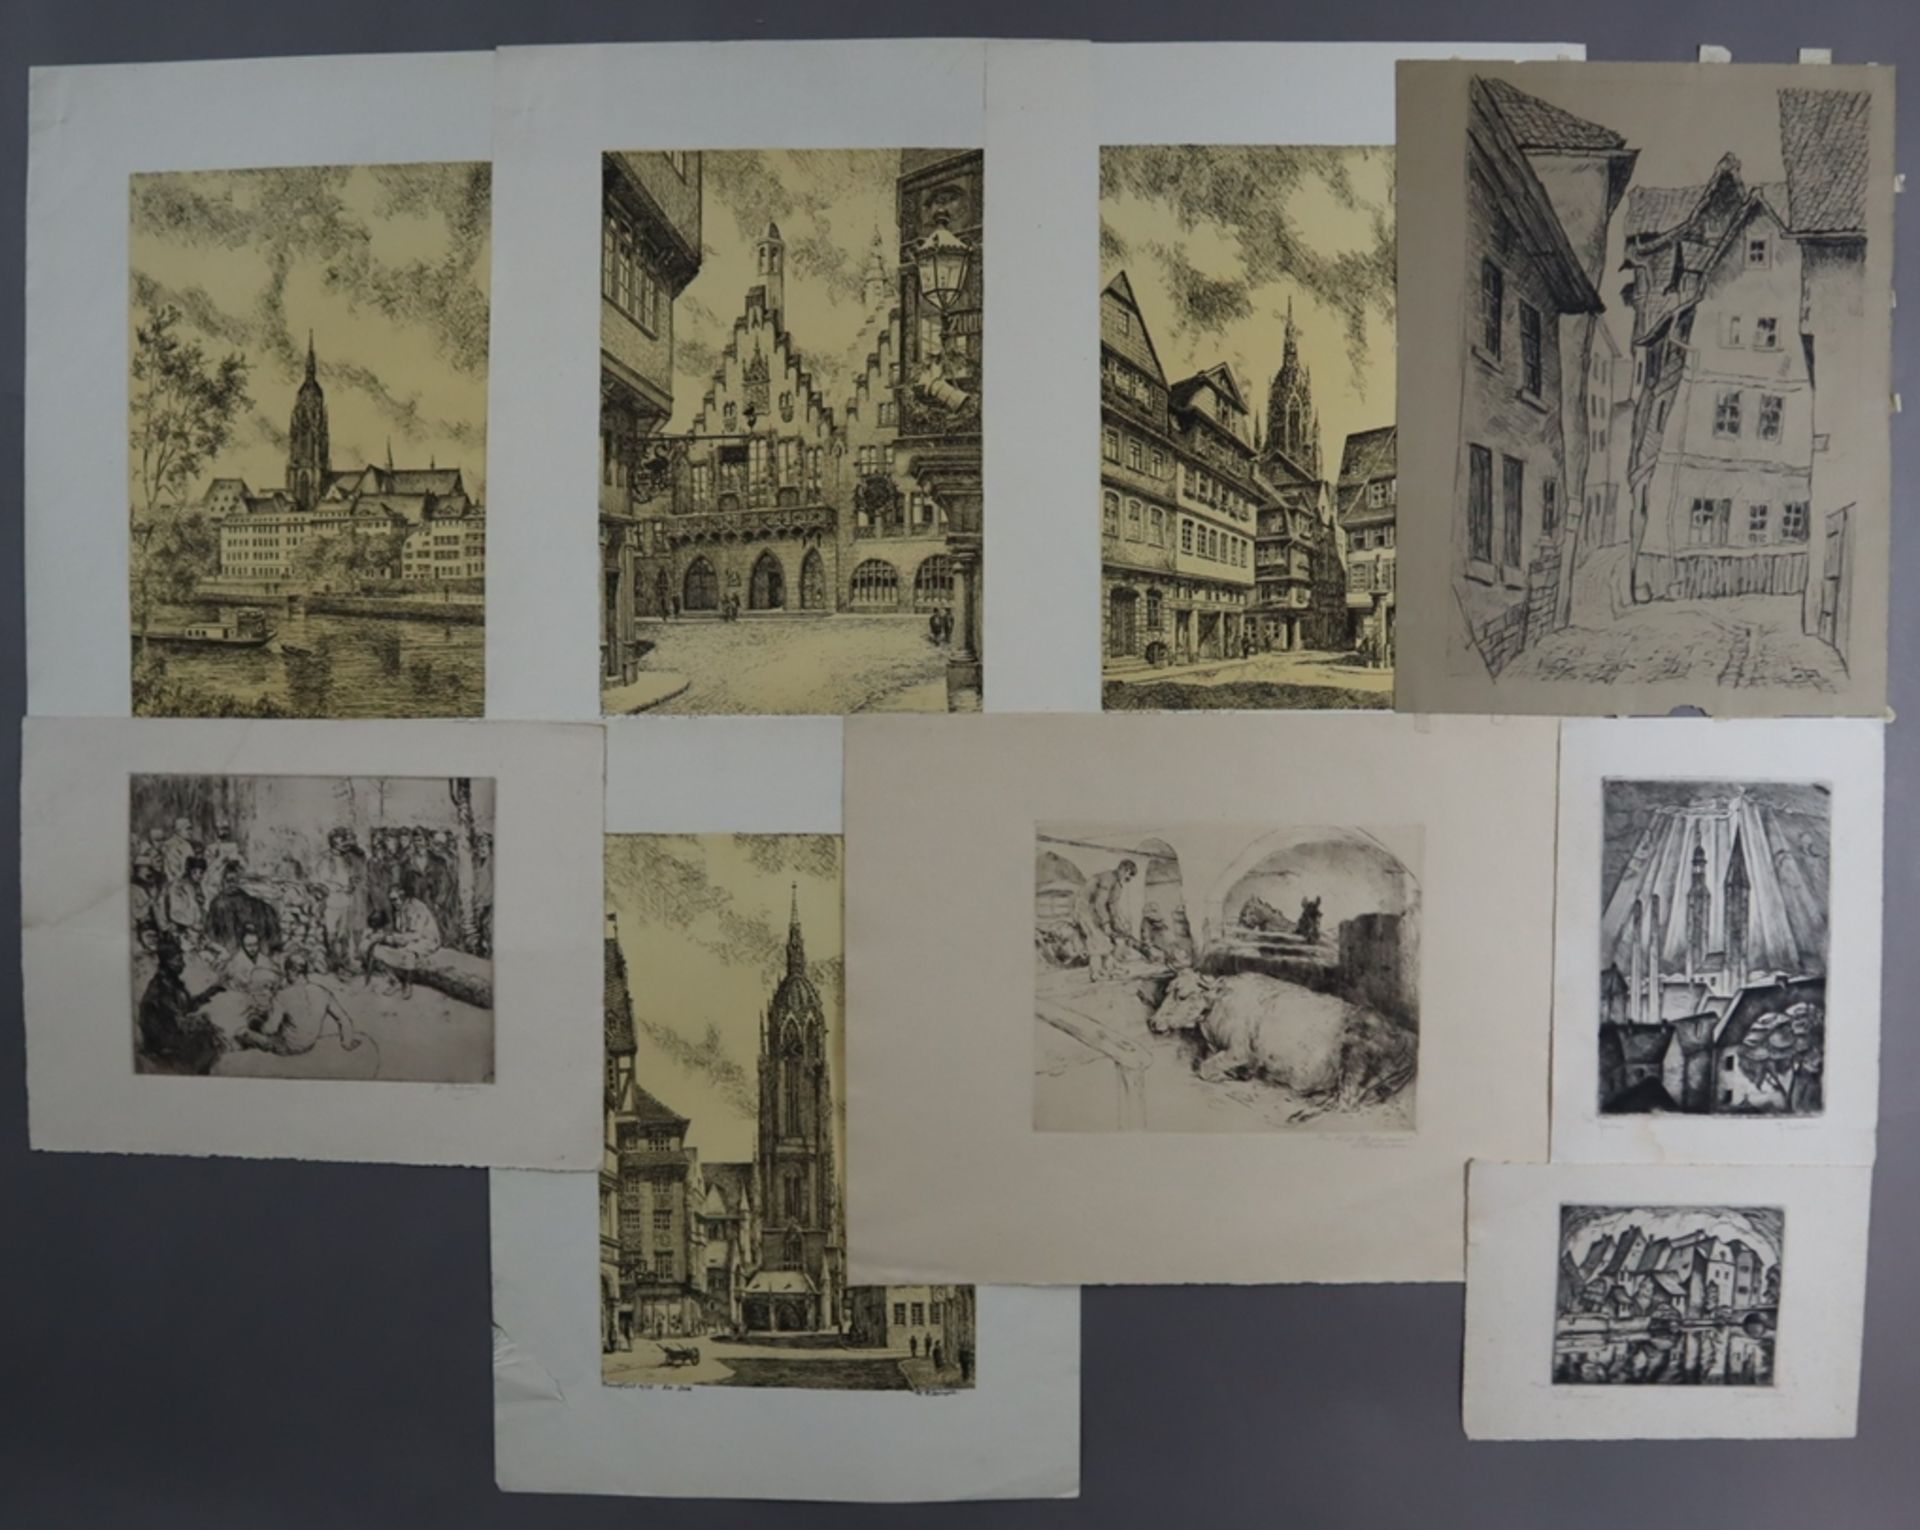 Grafiksammlung - 9-teilig, diverse Künstler, Techniken und Motive, unter anderem Thielmann, Wilhelm